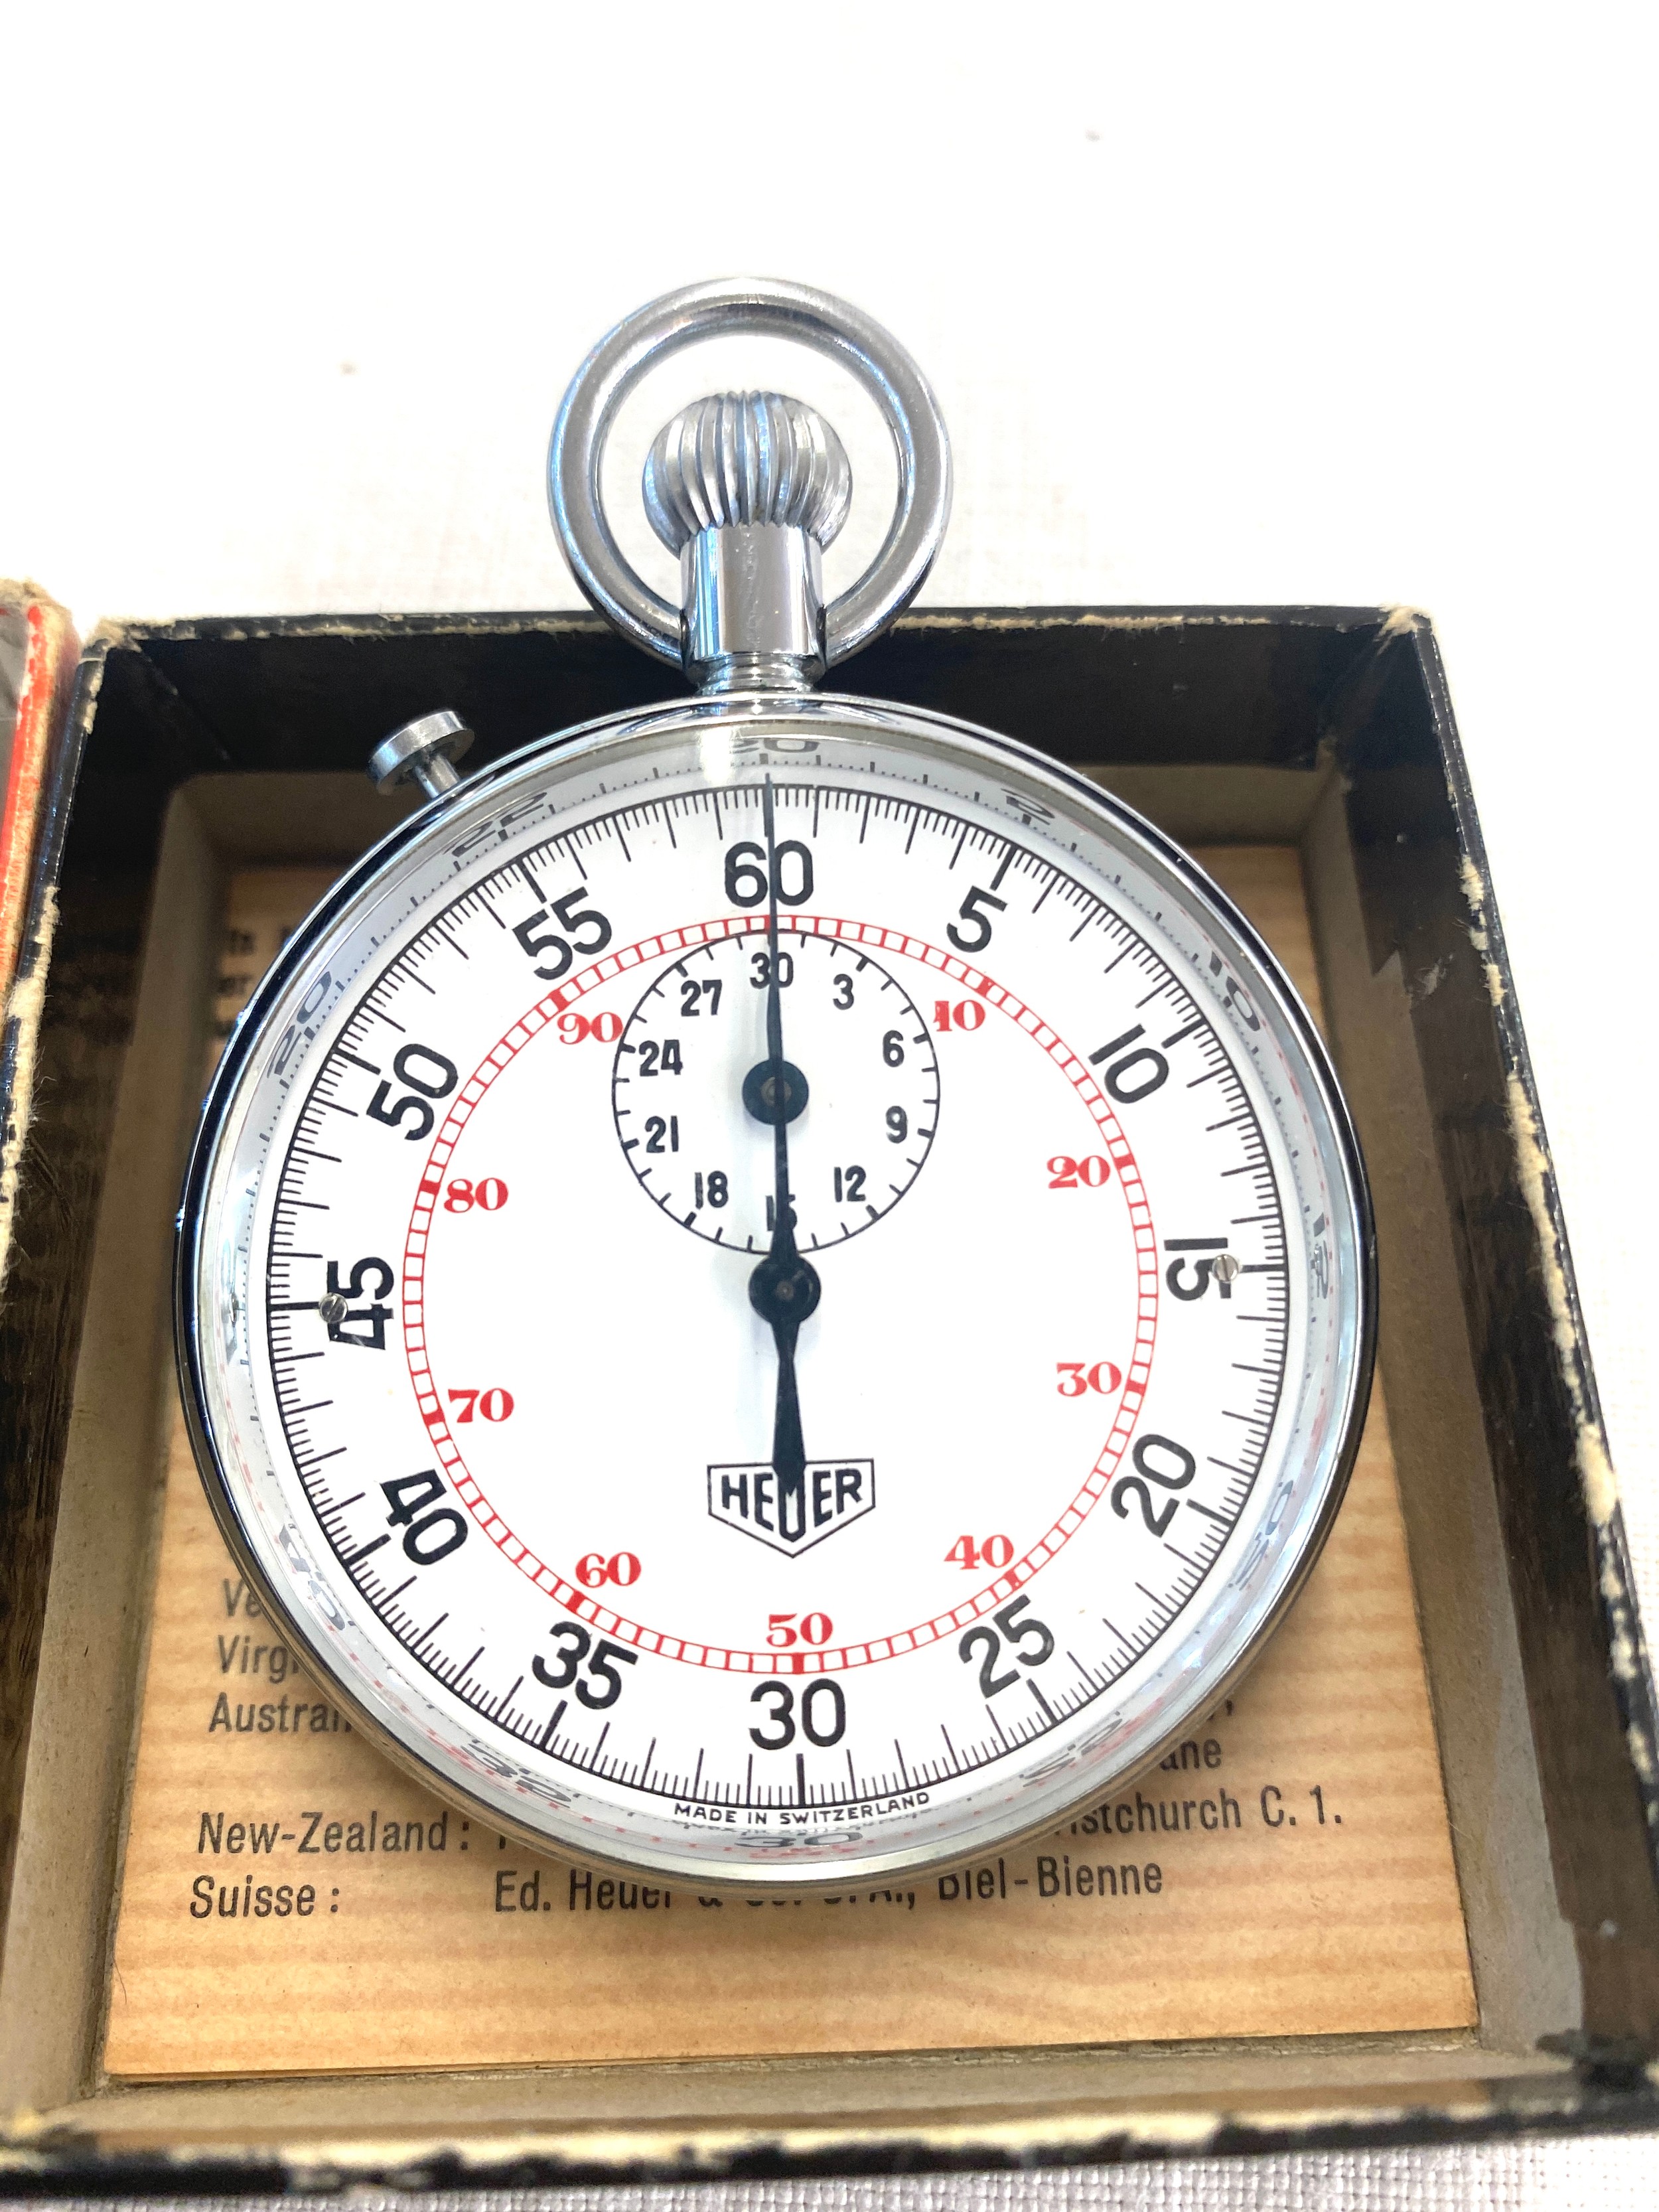 Cased heuer split second stopwatch, in original box